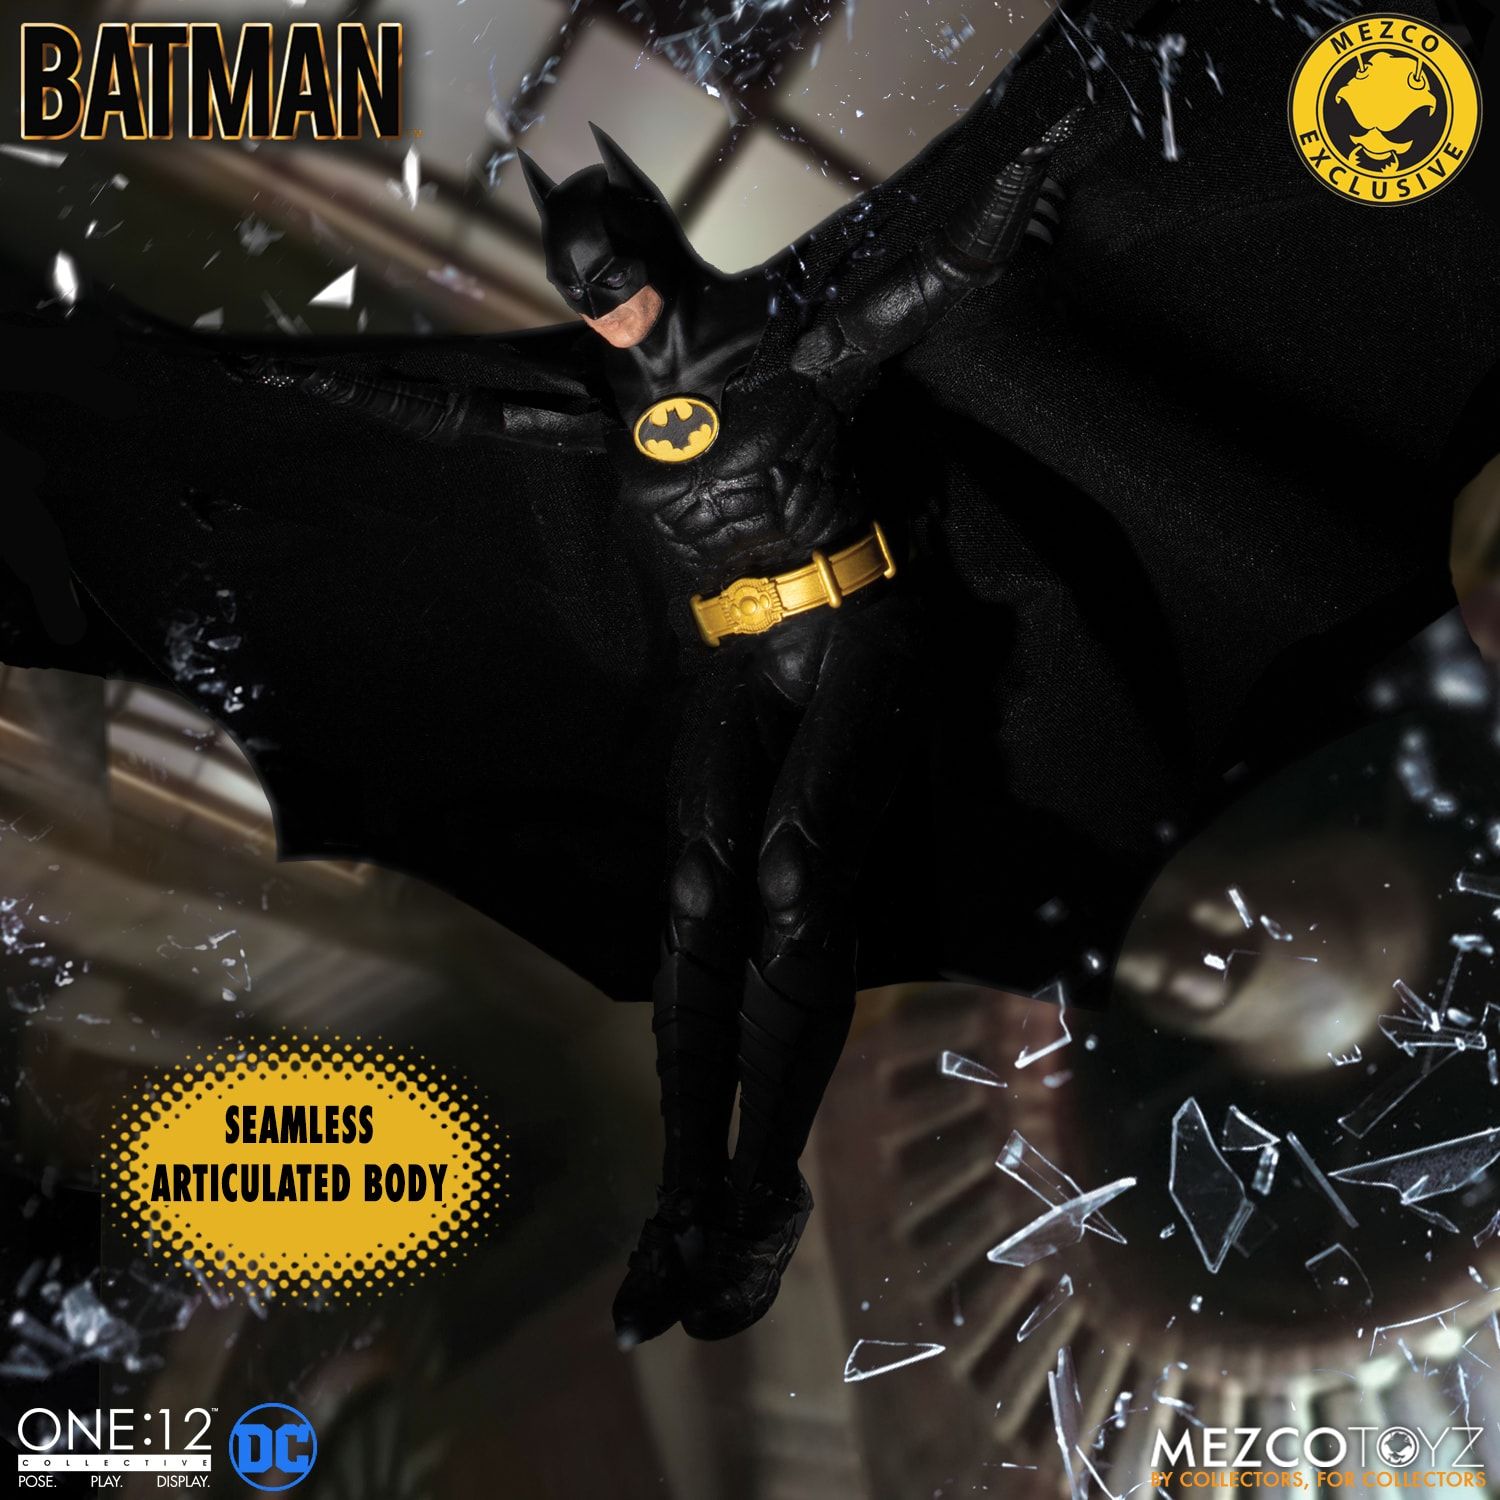 One:12 Collective Batman - 1989 Edition | Mezco Toyz